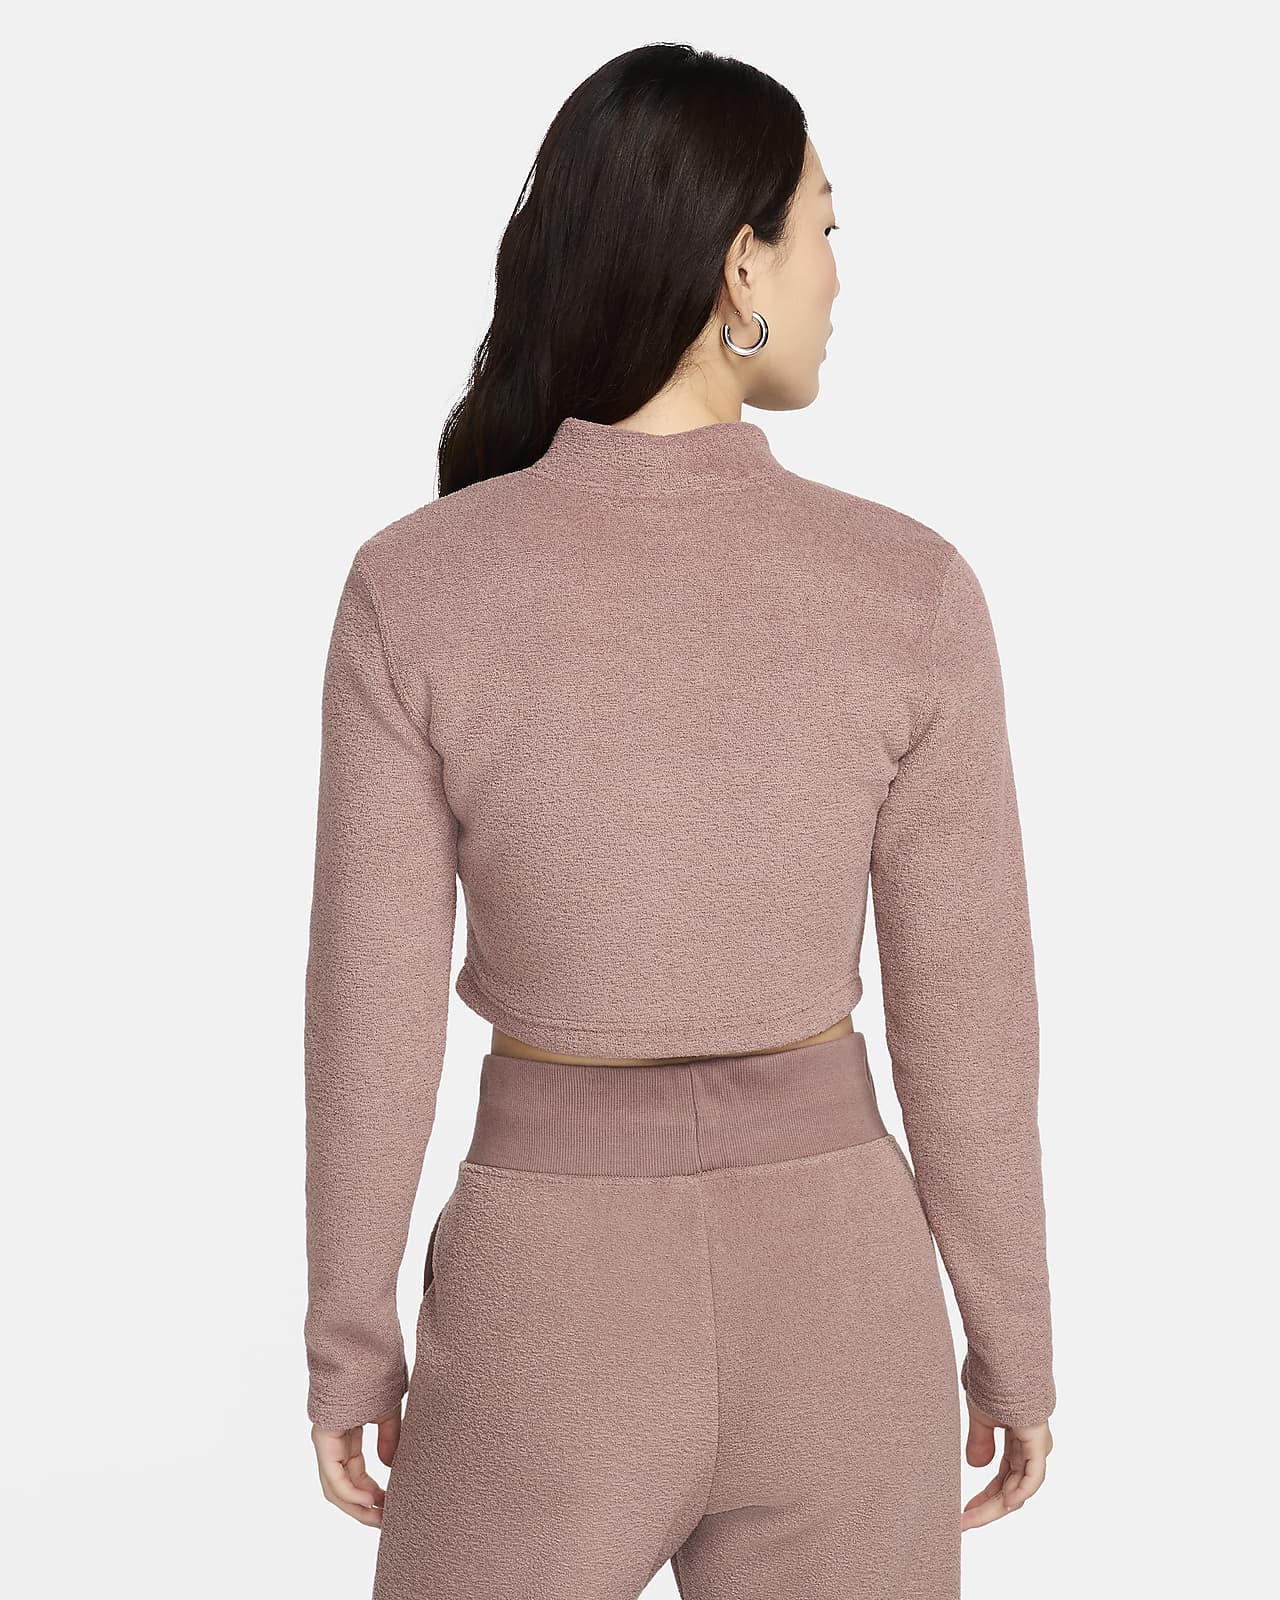 Nike Sportswear Phoenix Plush Women's Slim Long-Sleeve Cropped Cozy Fleece  Top